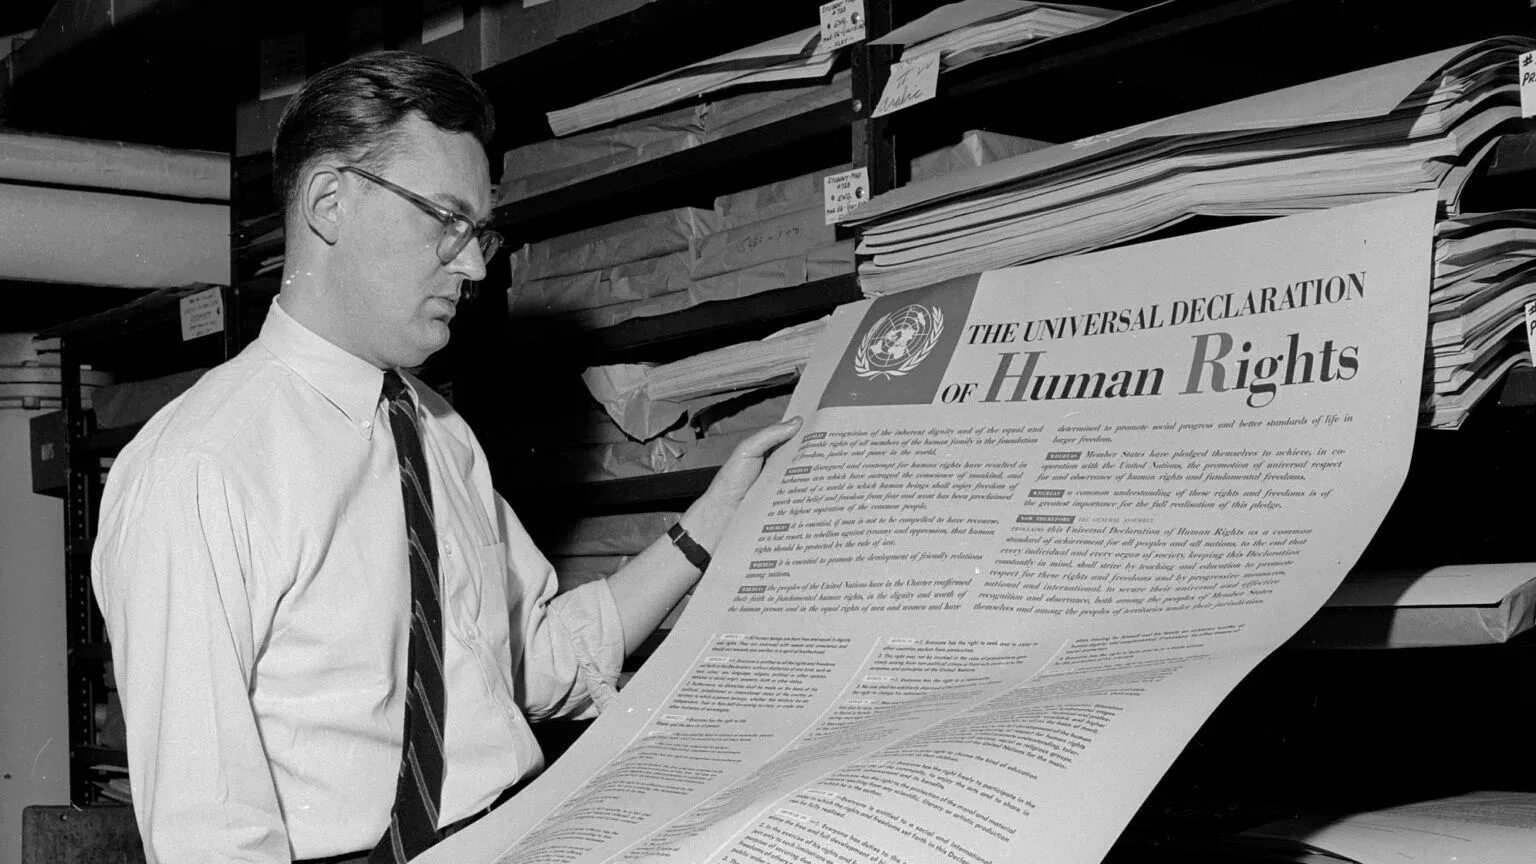 Принятие декларации оон. Всеобщая декларация прав человека 1948 года. Генеральной Ассамблеей ООН 10 декабря 1948 года. Декларация прав человека ООН 1948. Всеобщая декларация прав человека 10 декабря 1948 года.